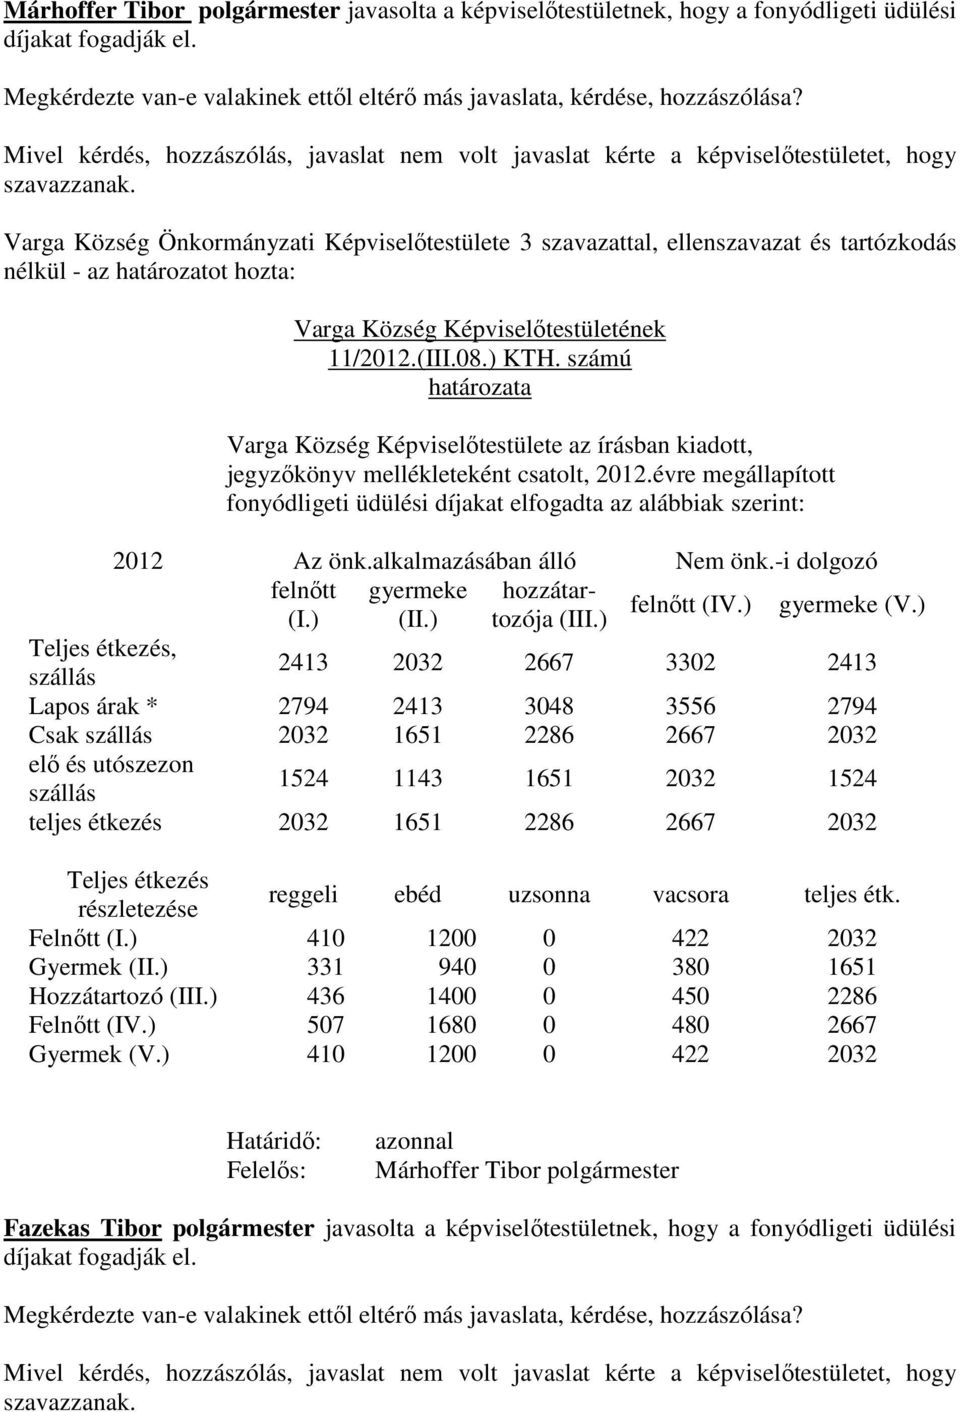 Varga Község Önkormányzati Képviselőtestülete 3 szavazattal, ellenszavazat és tartózkodás nélkül - az határozatot hozta: Varga Község Képviselőtestületének 11/2012.(III.08.) KTH.